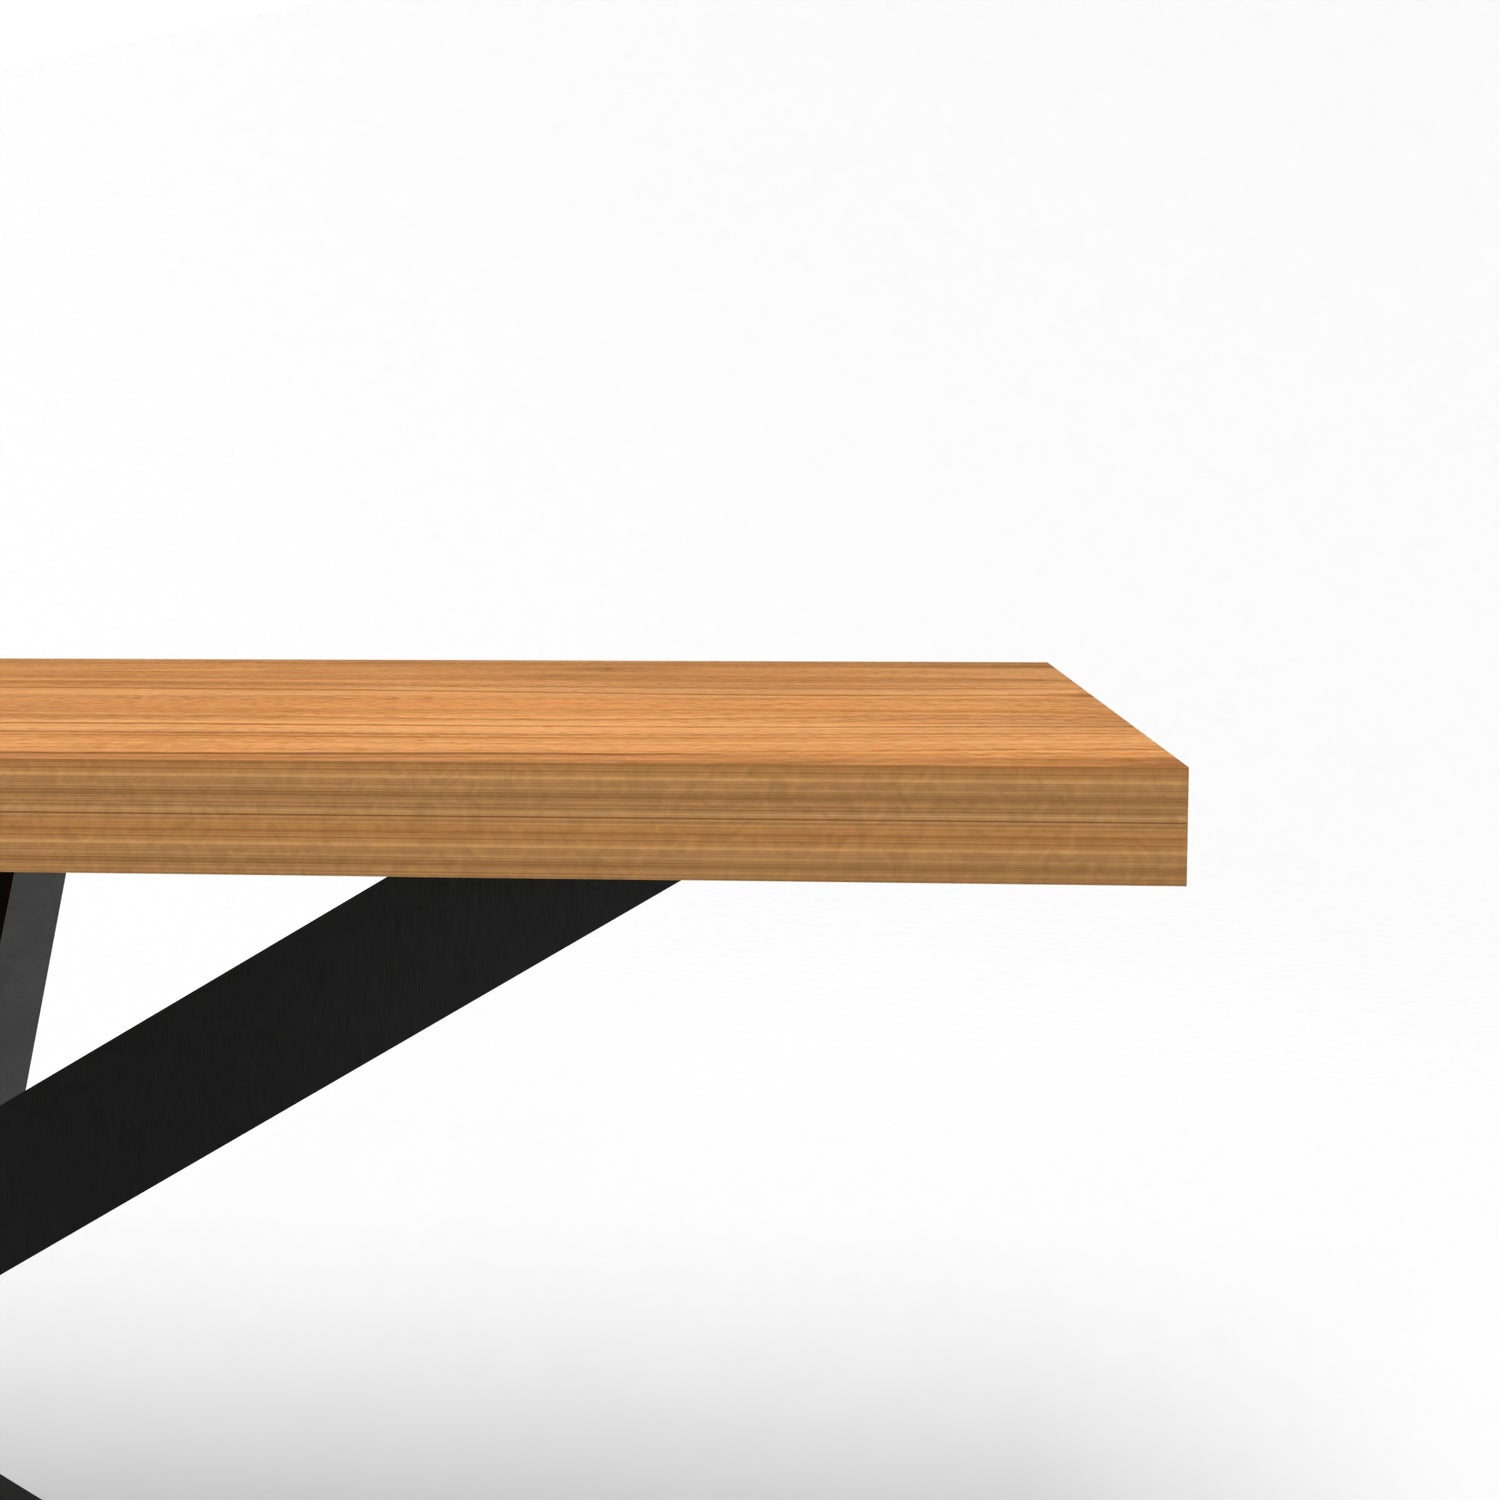 Designer Holztisch - Spider Tischgestell